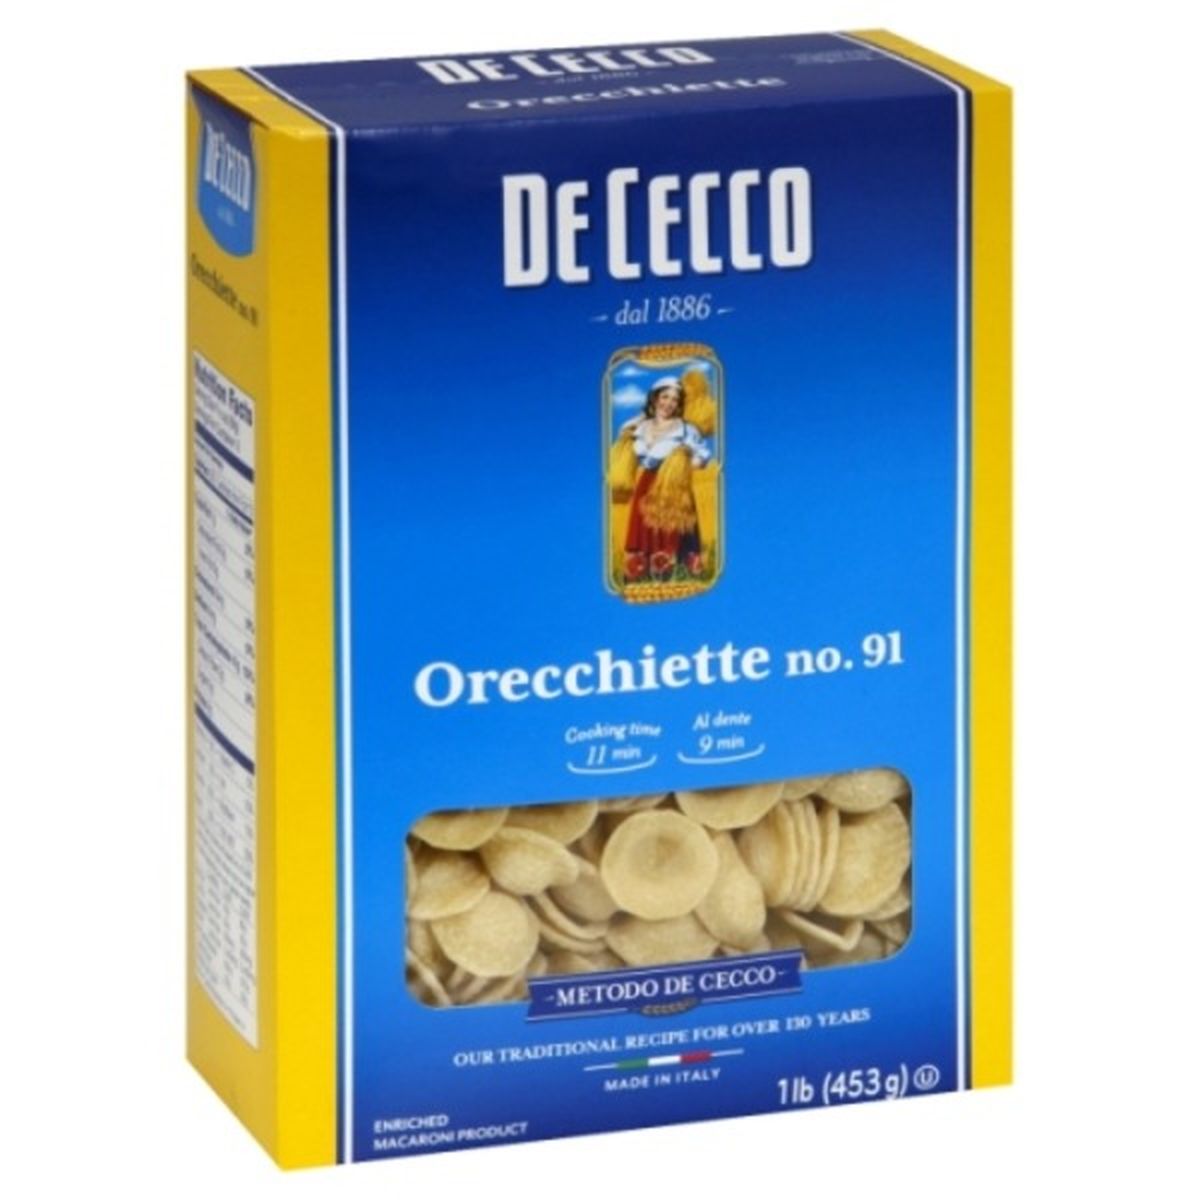 Calories in De Cecco Orecchiette, No. 91